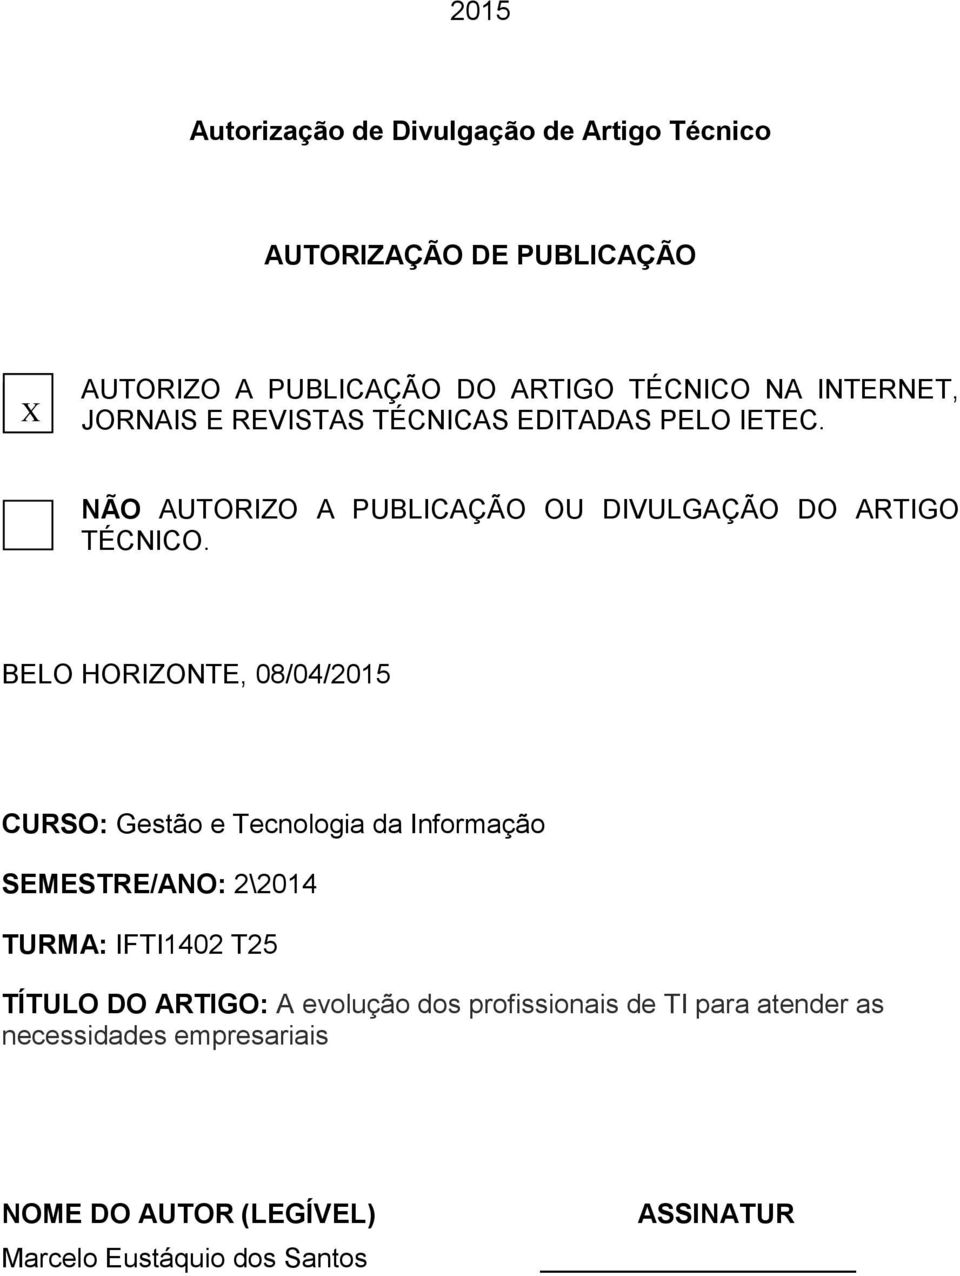 BELO HORIZONTE, 08/04/2015 CURSO: Gestão e Tecnologia da Informação SEMESTRE/ANO: 2\2014 TURMA: IFTI1402 T25 TÍTULO DO